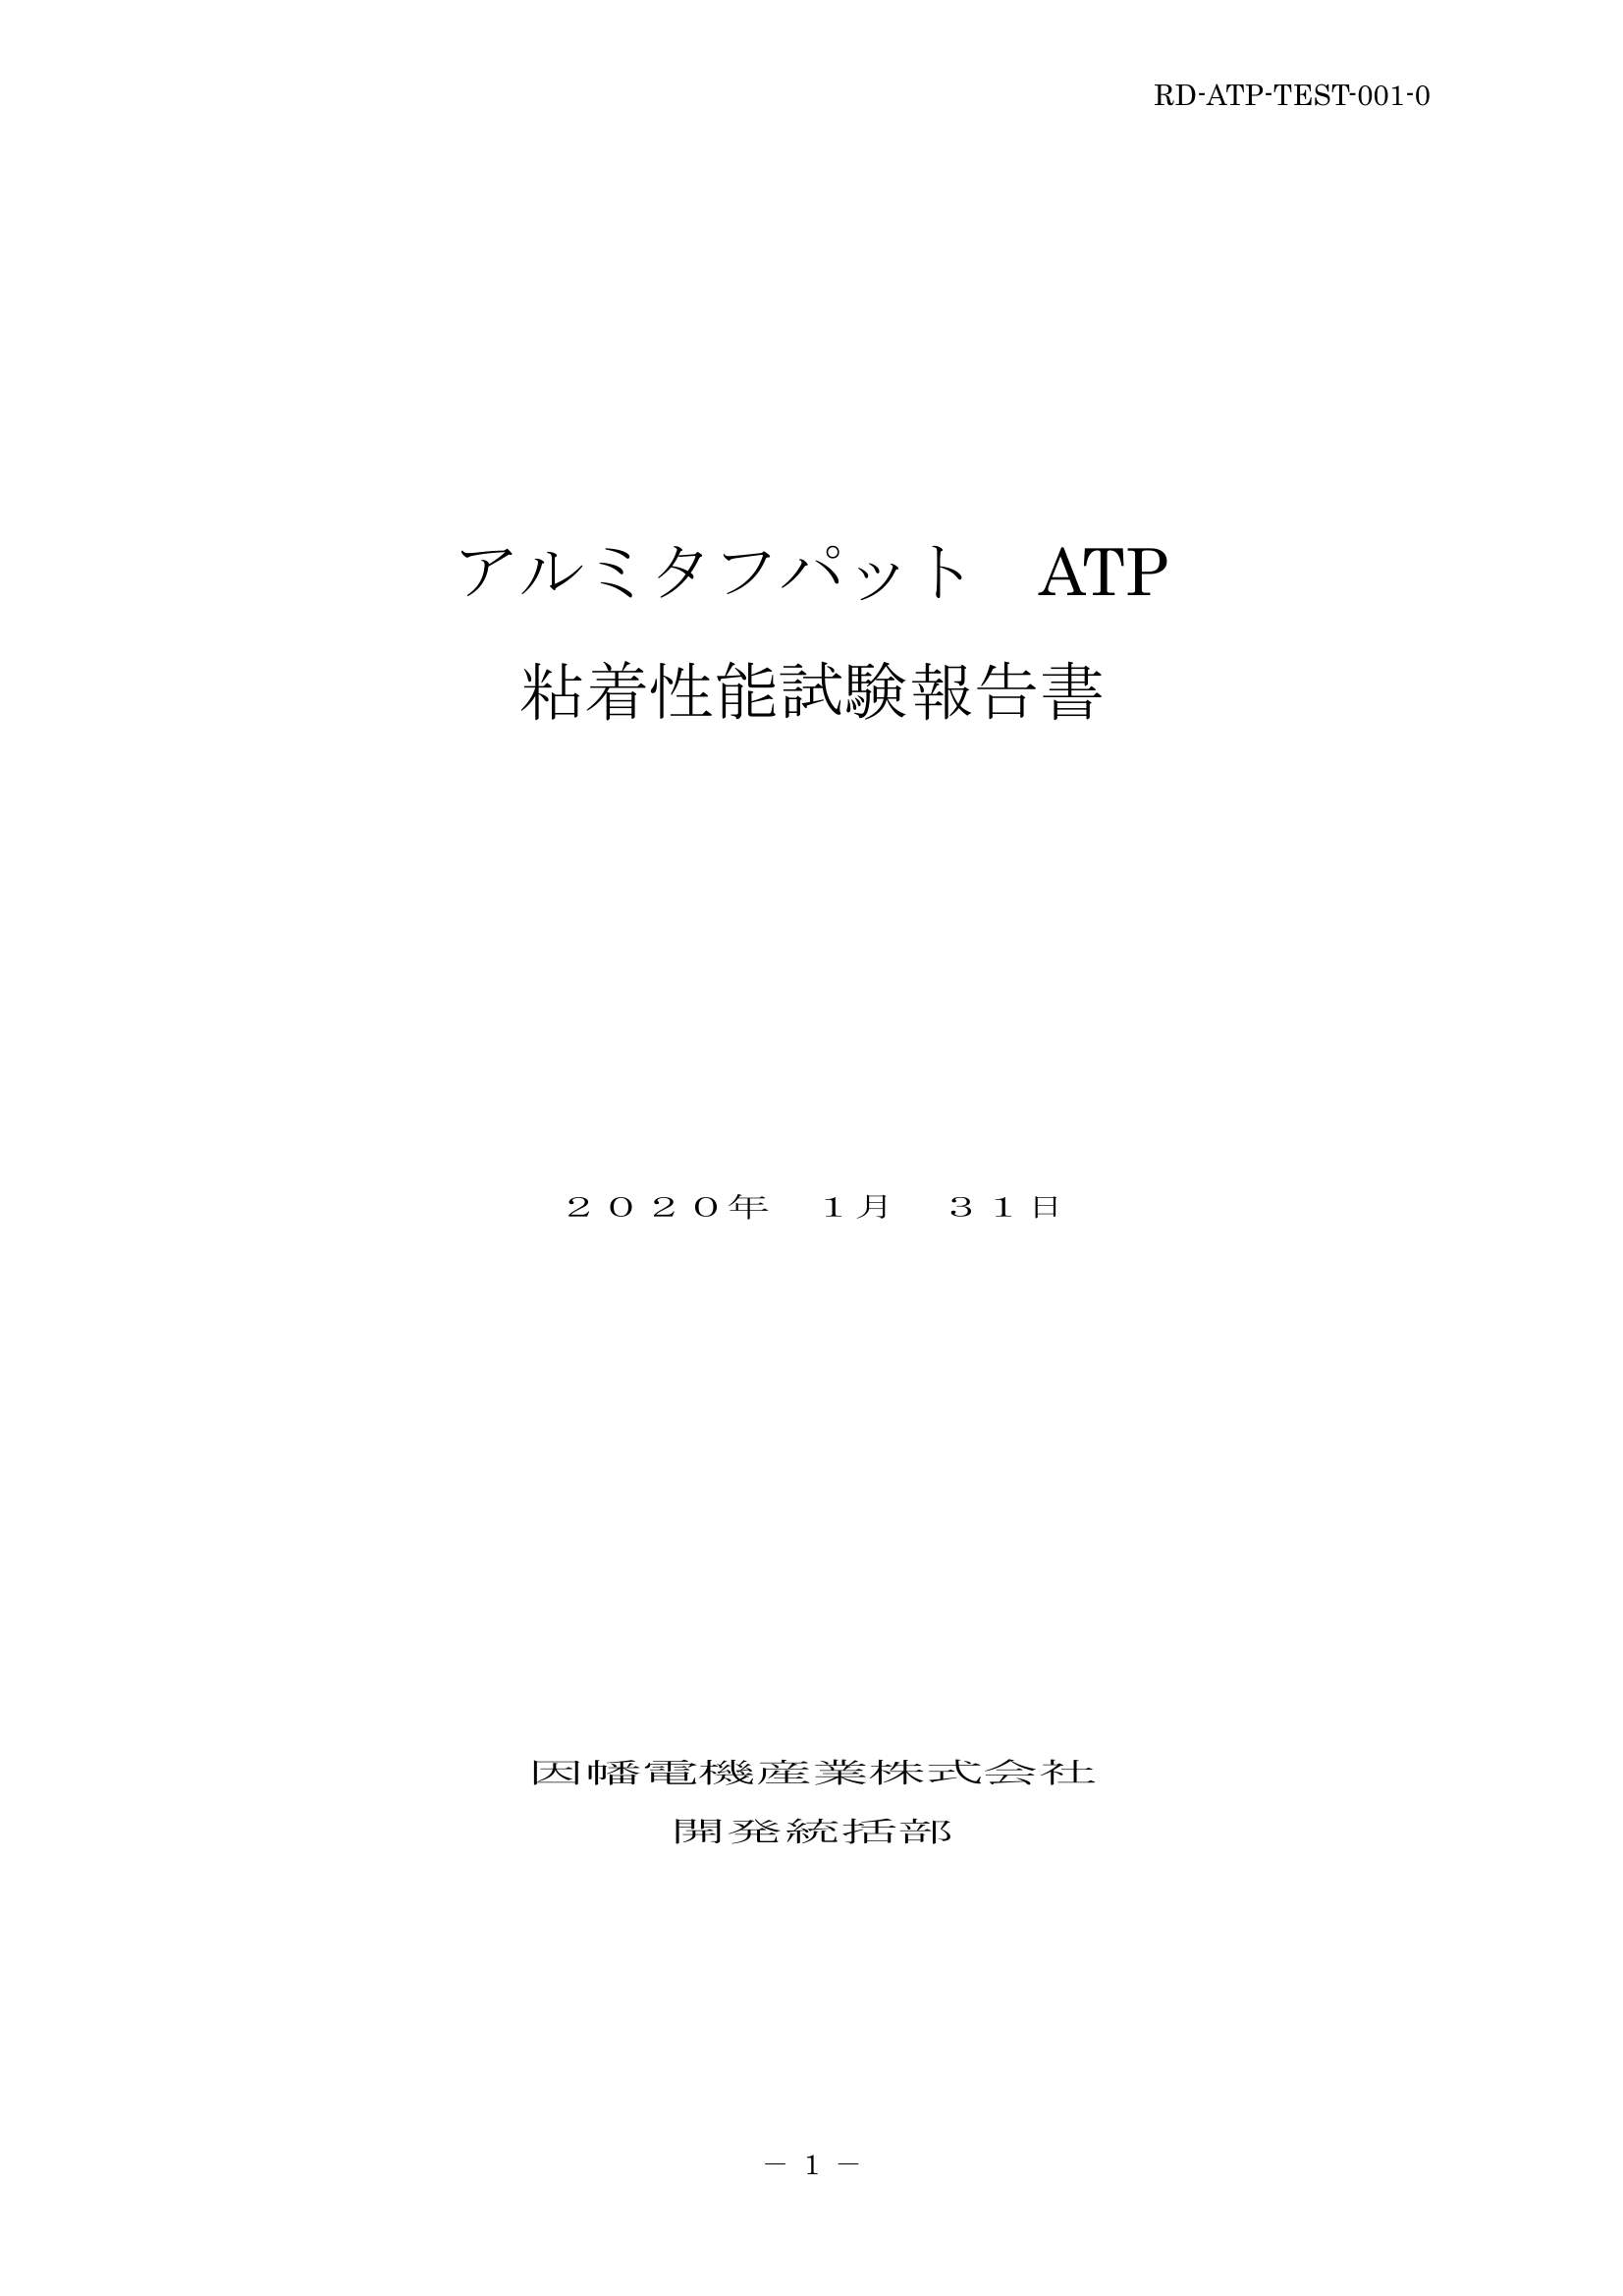 ATP_粘着性能試験報告書_20200131.pdf